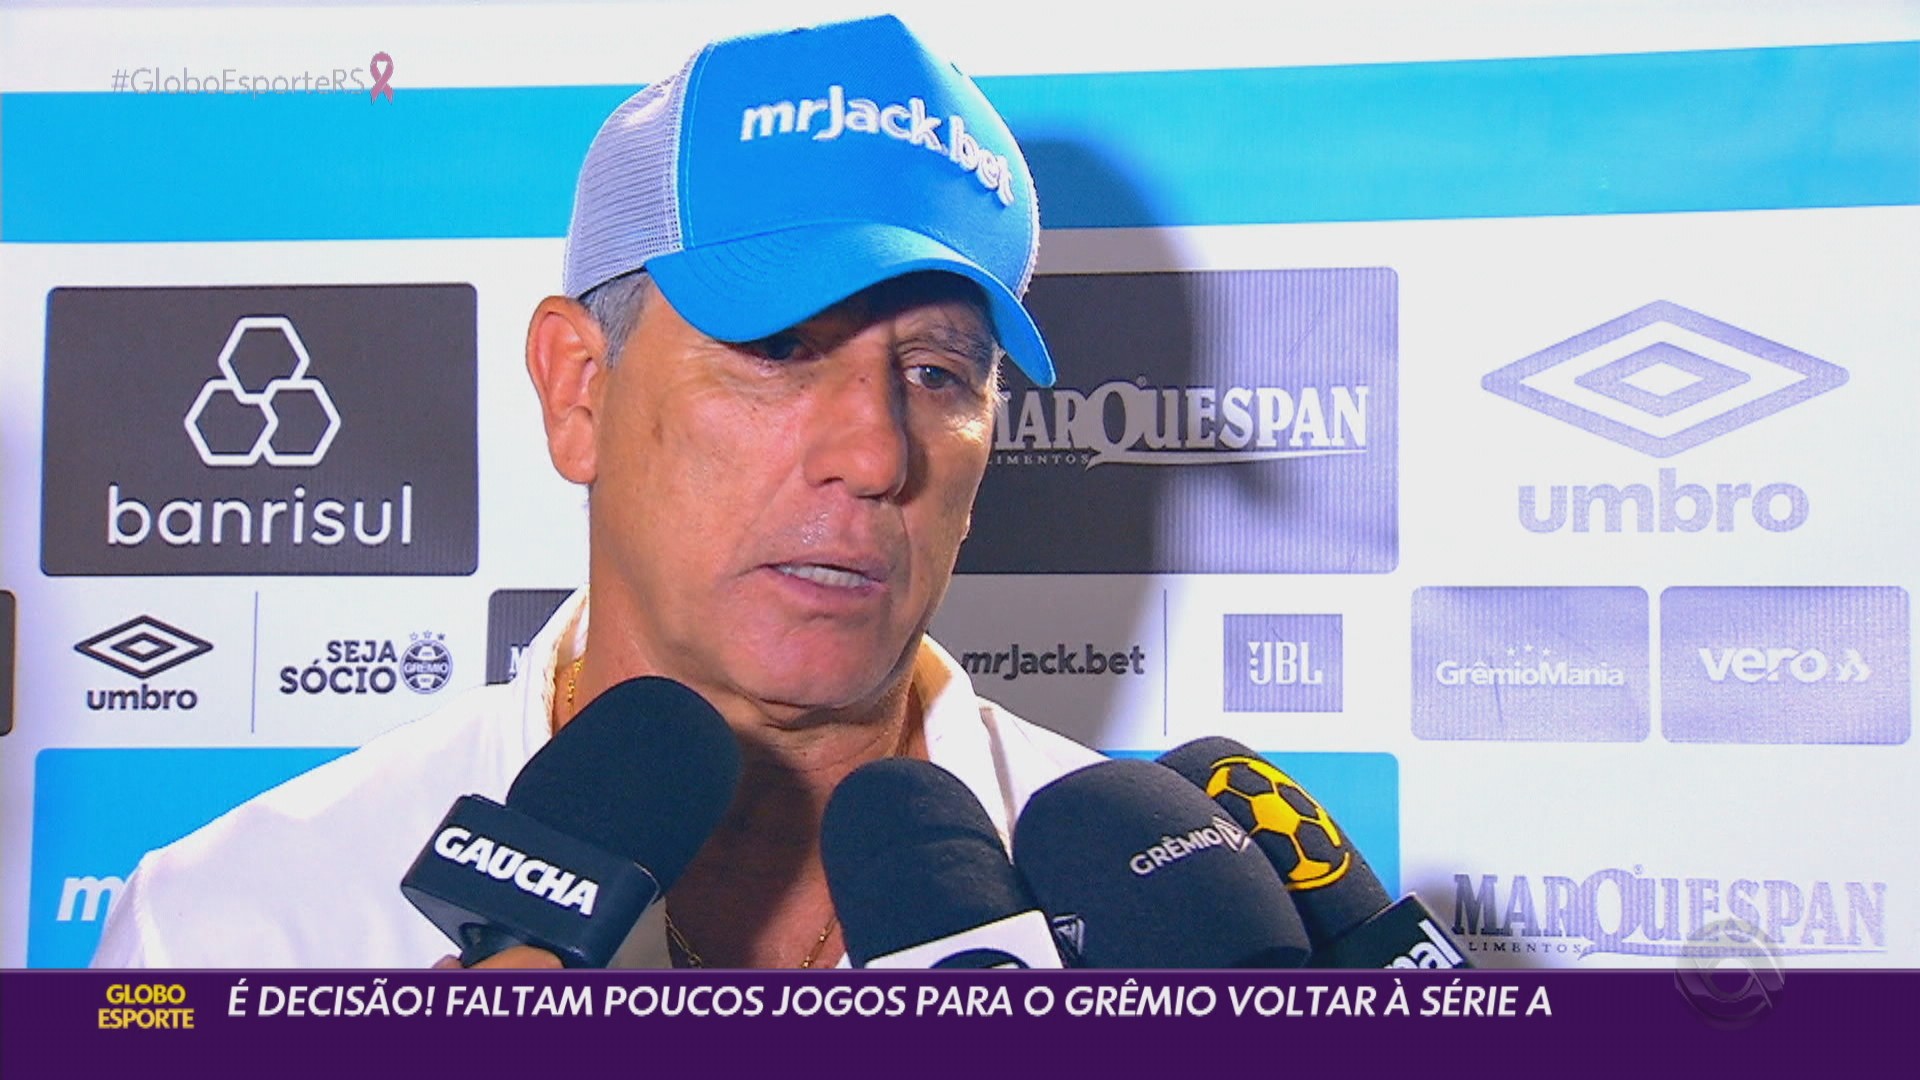 Grêmio em clima de decisão e Liziero titular no Inter: veja os vídeos do Globo Esporte RS desta terça-feira